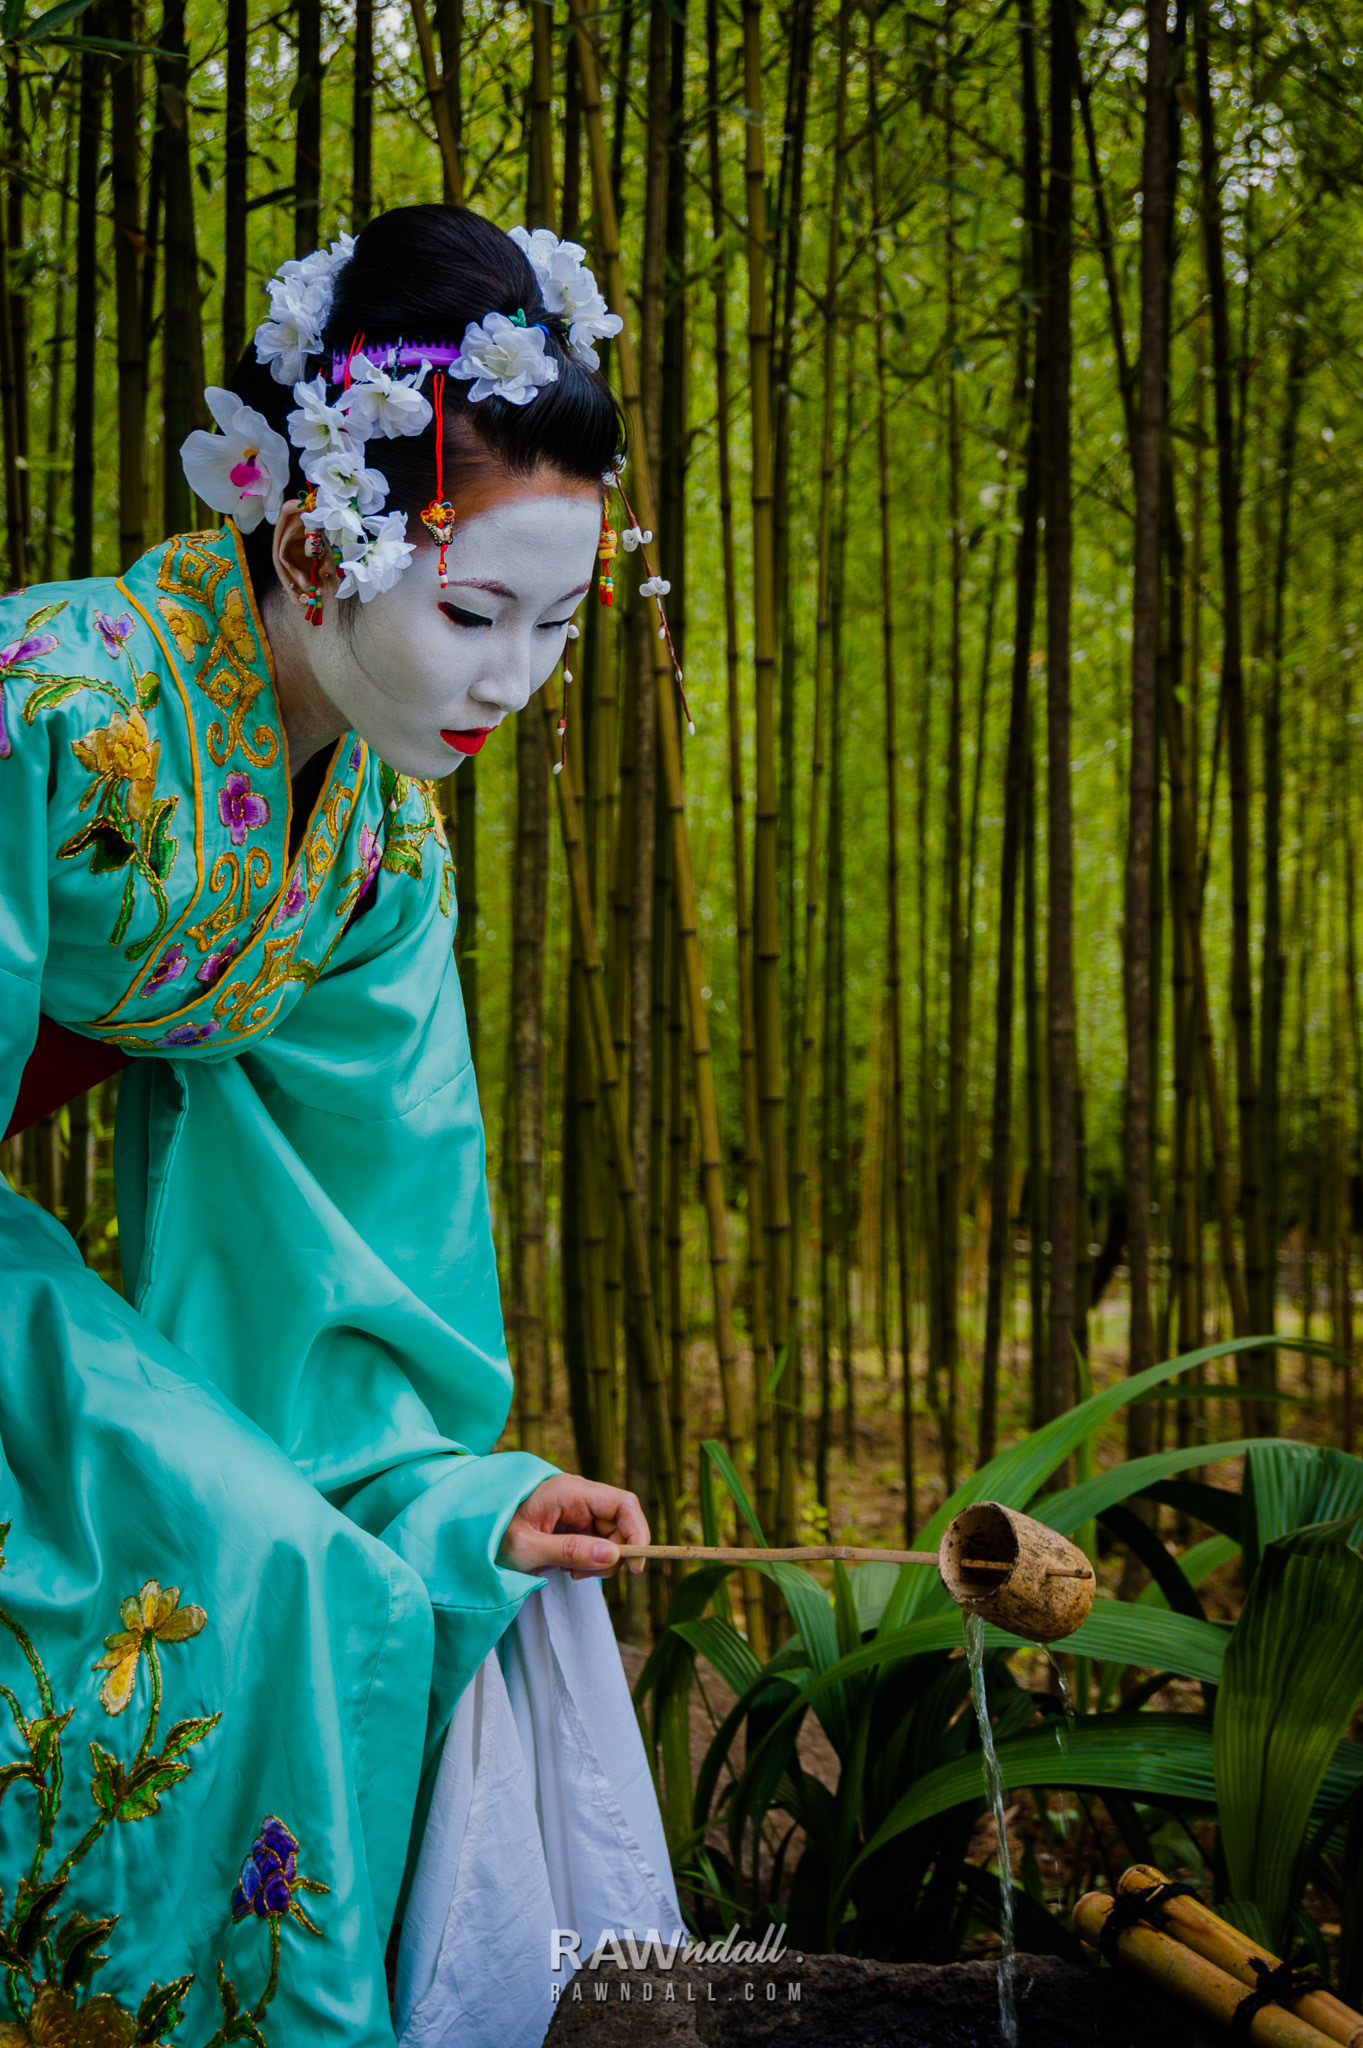 Mujer con traje de geisha entre bosque de bambú.